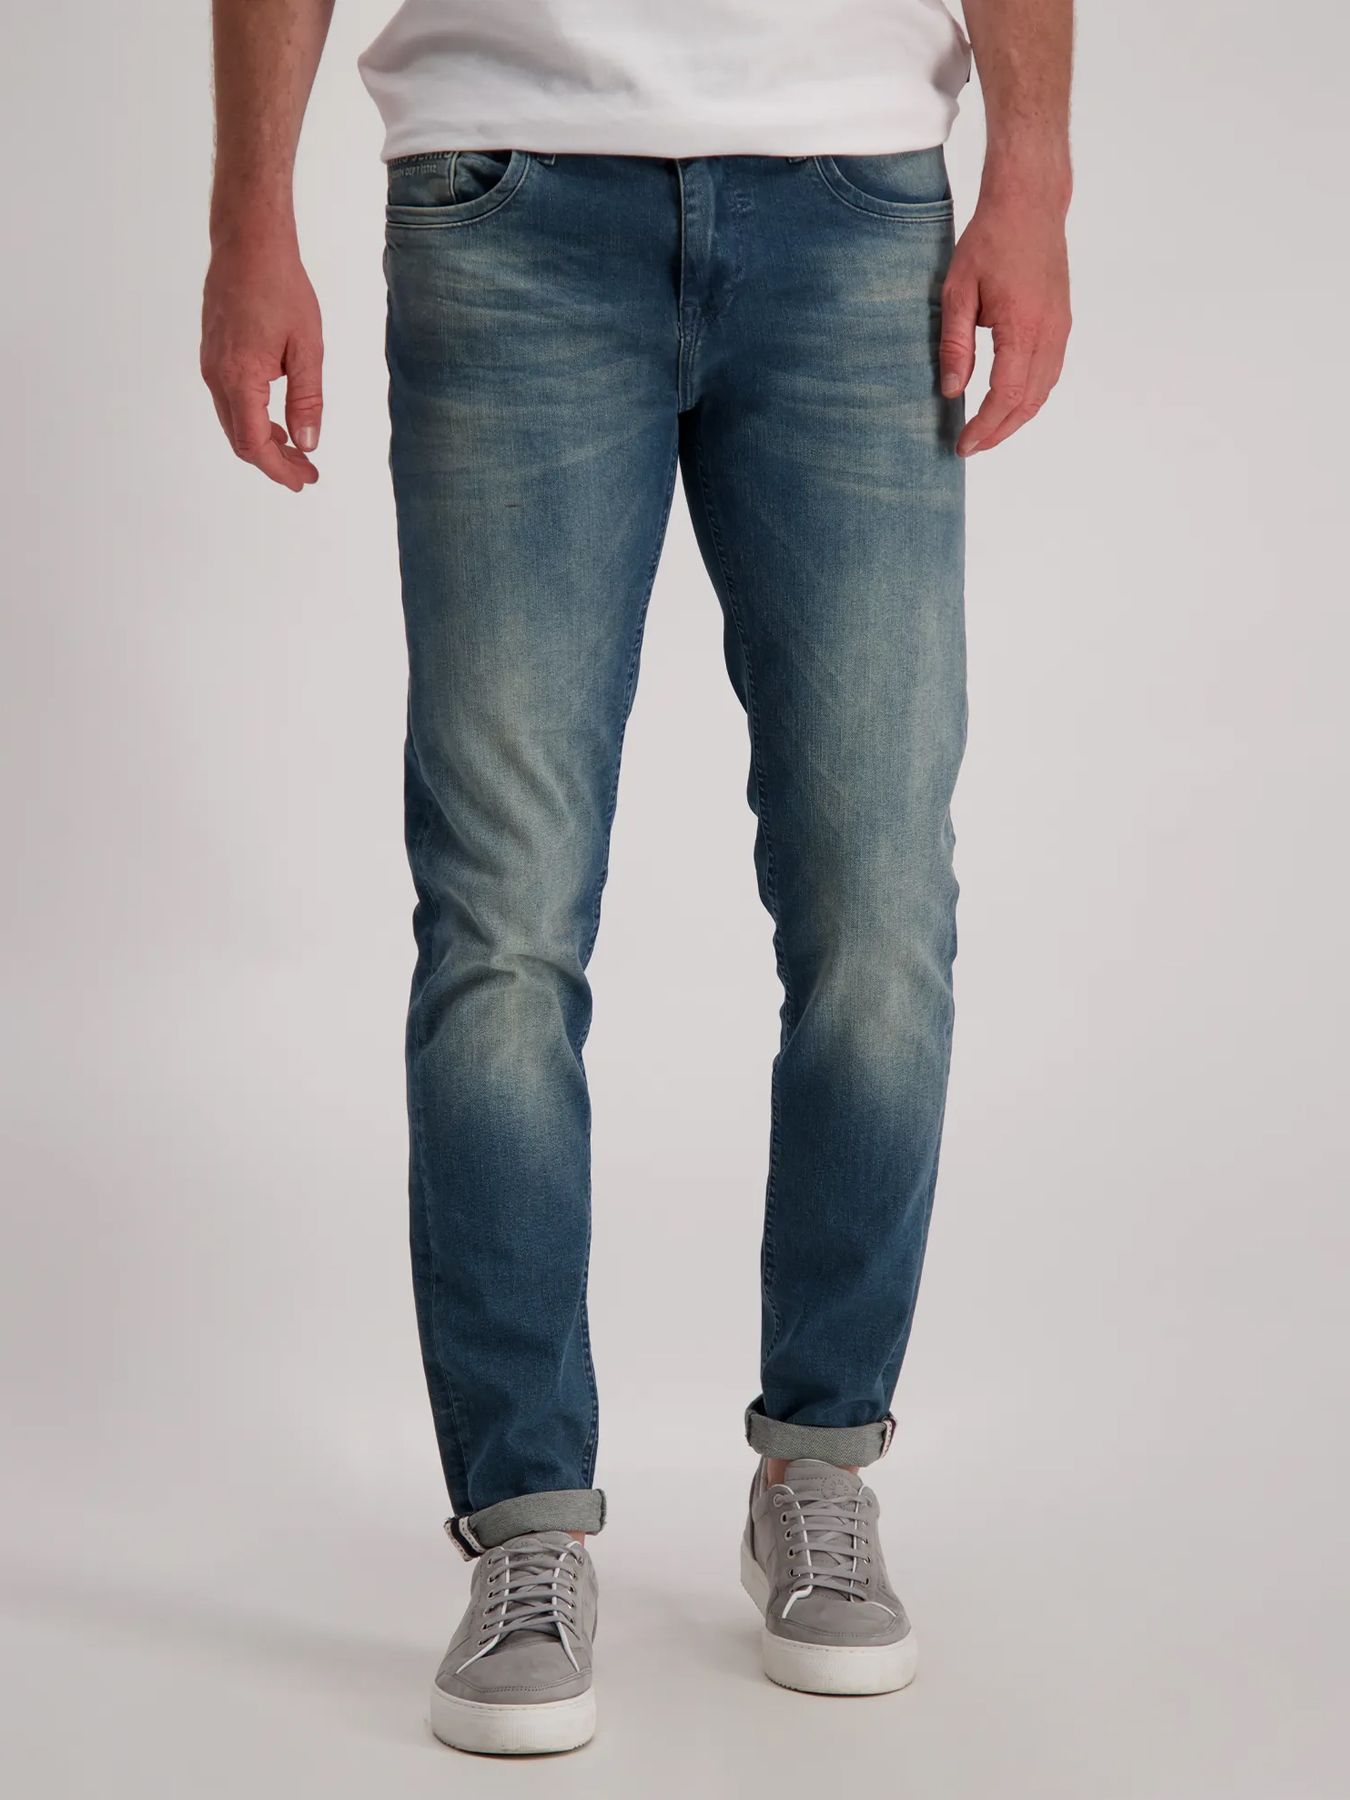 Cars jeans Jeans Blast Slim Fit 81 detroit wash 2900137344474